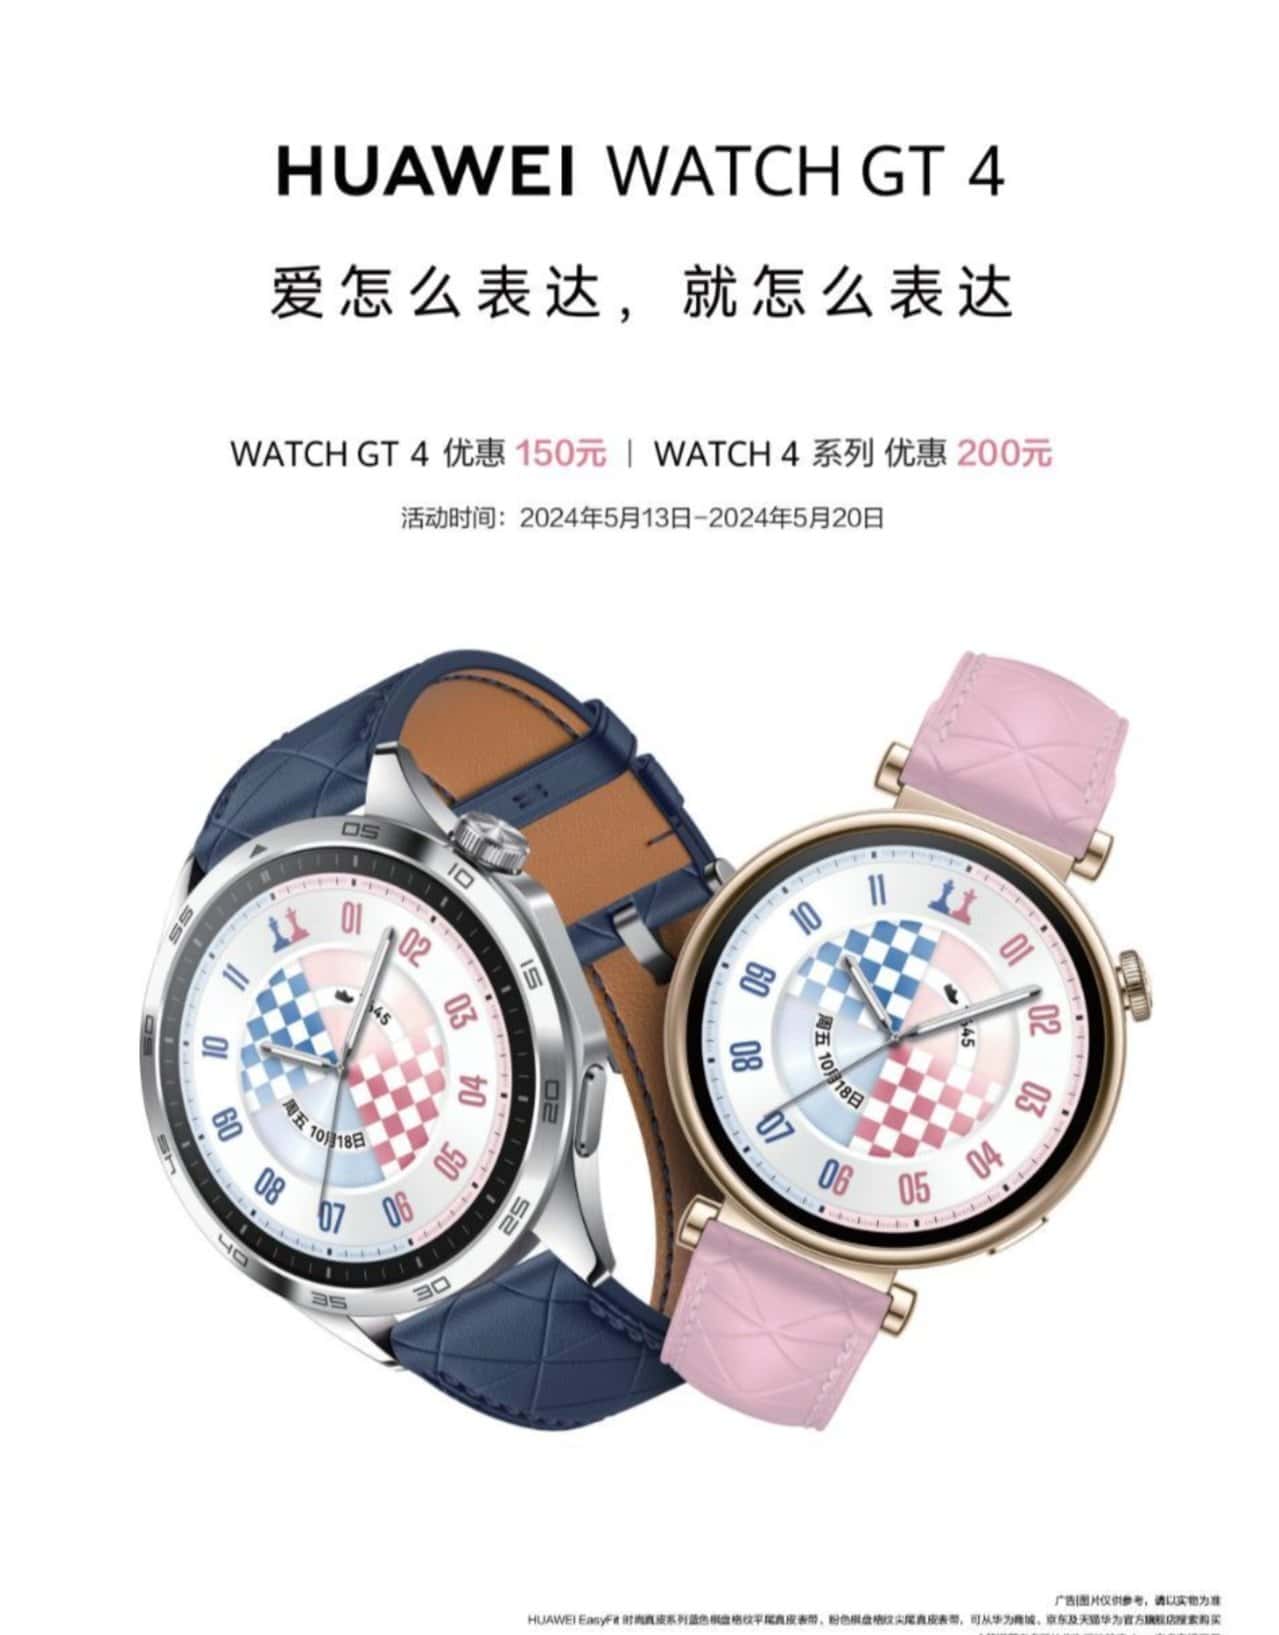 Huawei выпустит часы Watch GT 4 в двух новых цветовых вариантах